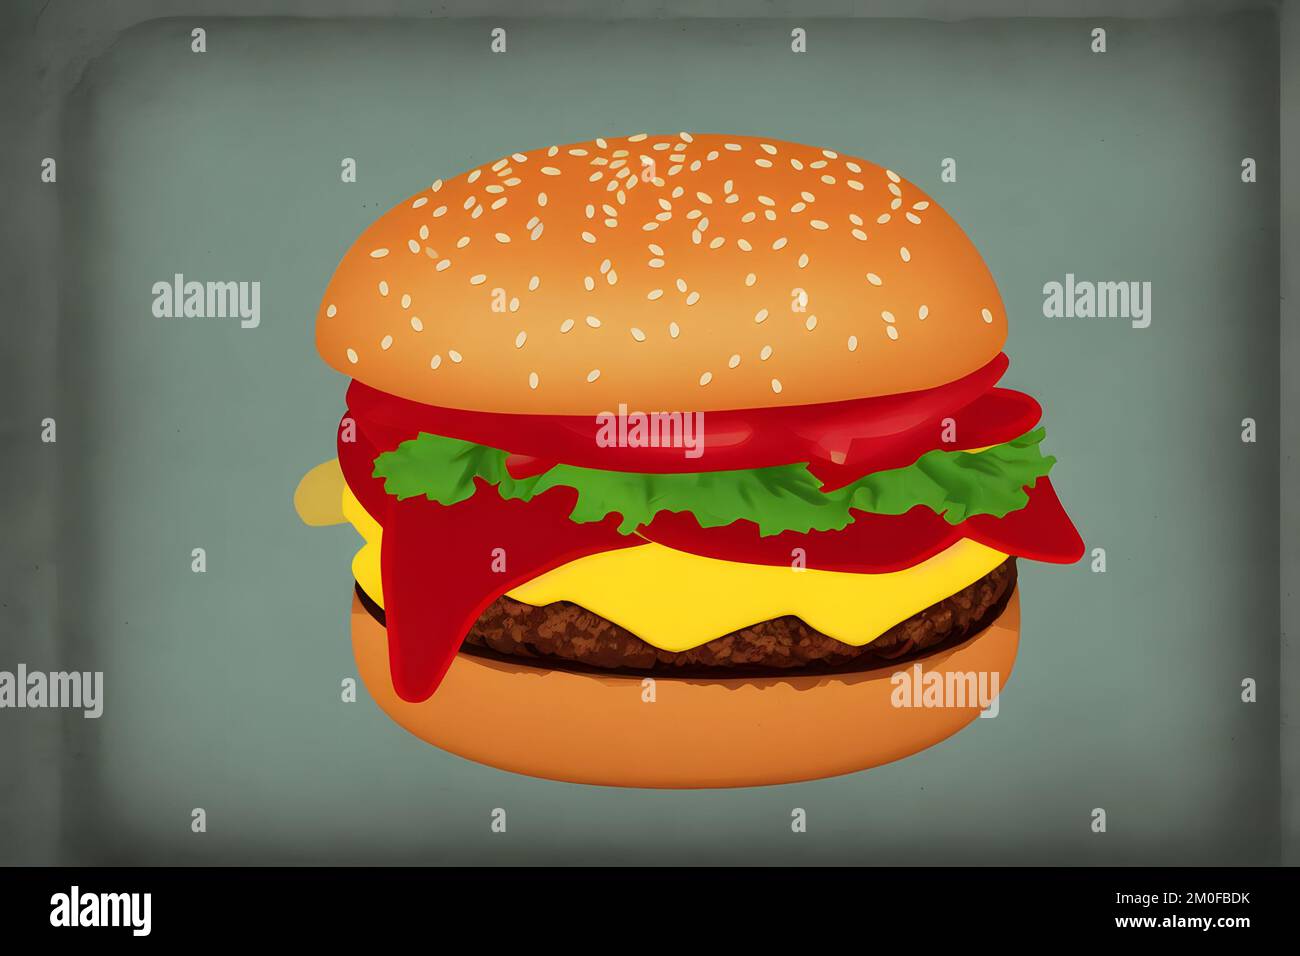 Illustrazione di hamburger in stile retrò, un classico fast food Foto Stock